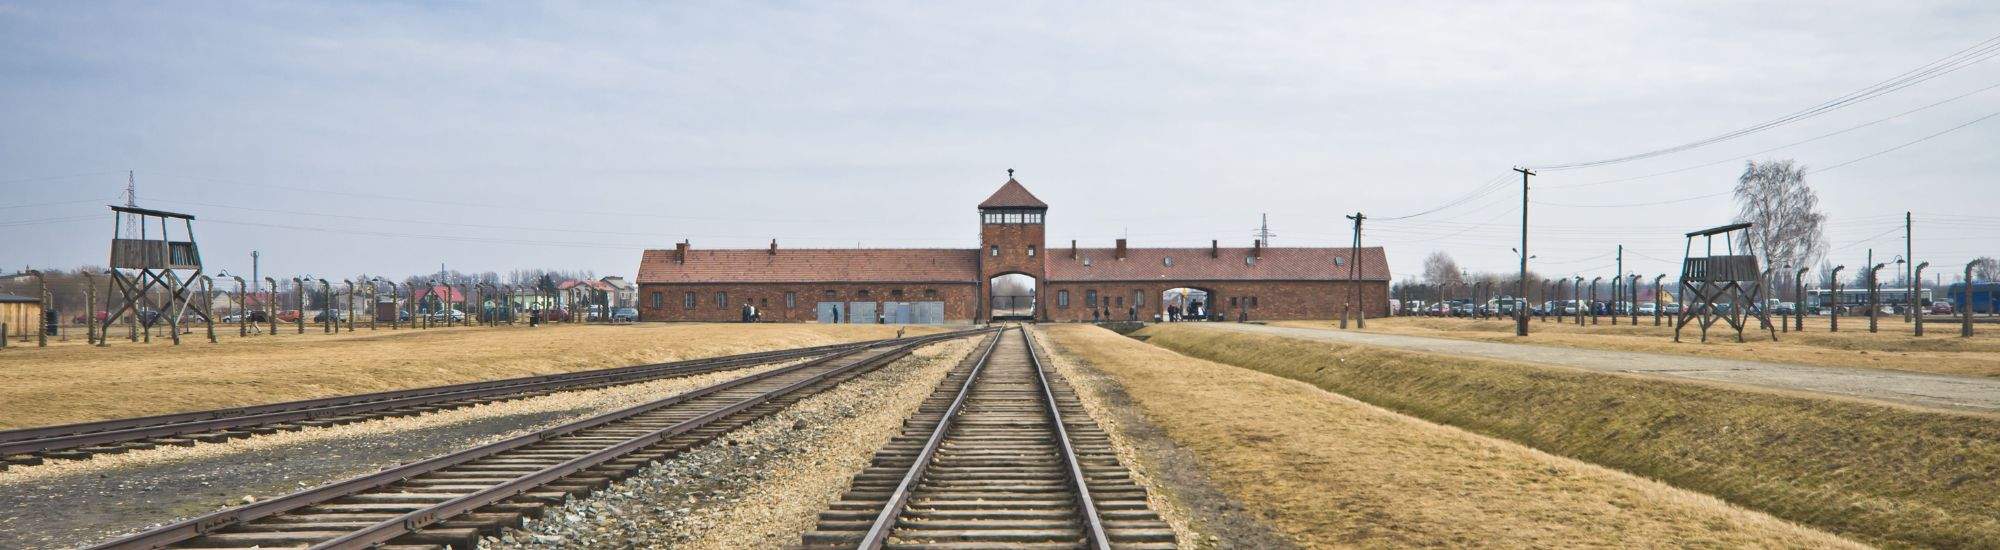 EE.UU. apoya la visita virtual a Auschwitz-Birkenau